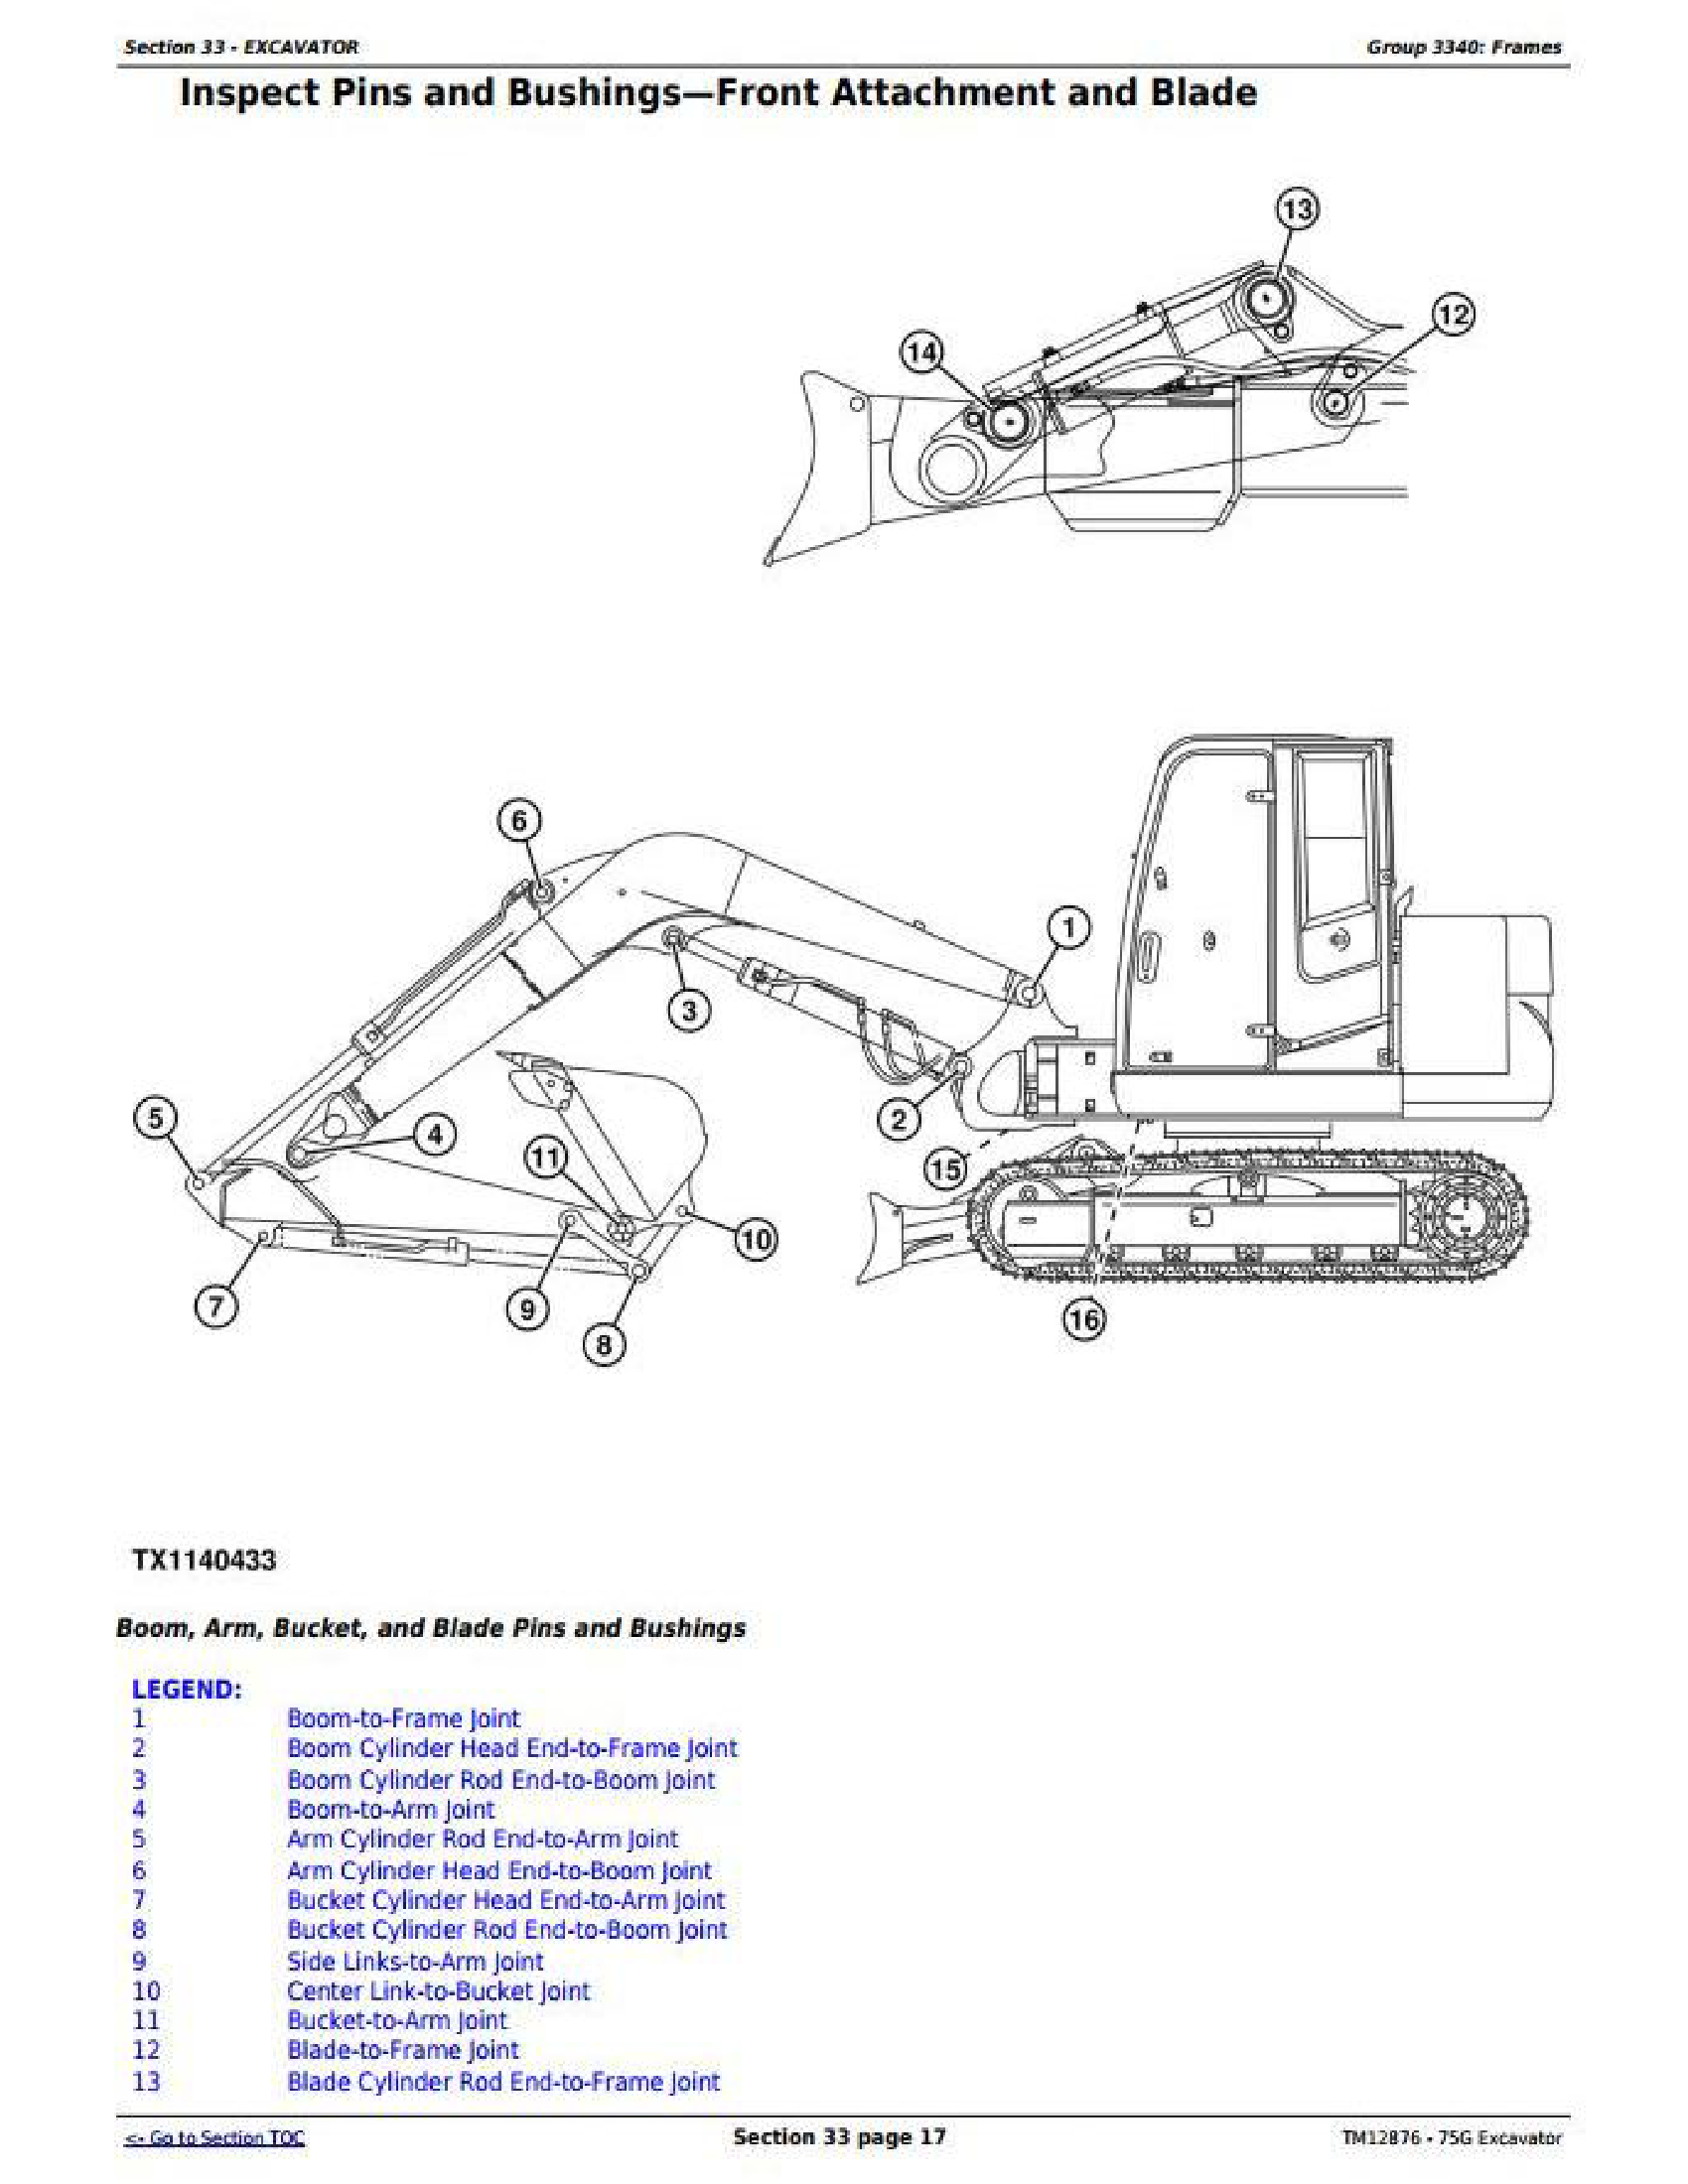 John Deere 5715 manual pdf